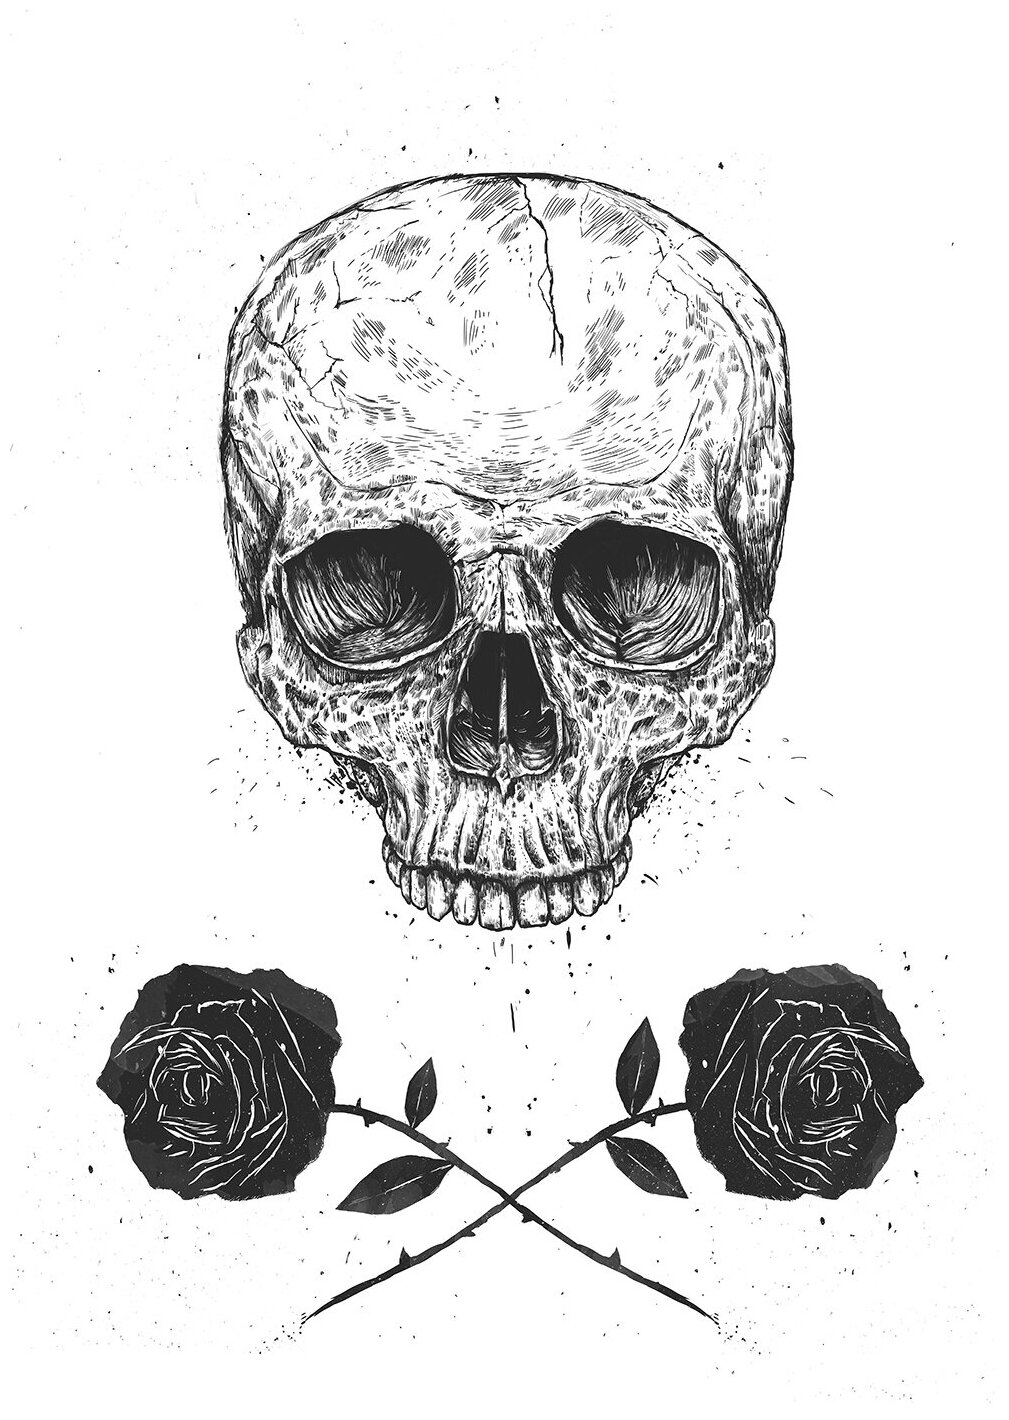 Интерьерный постер на стену в подарок "Skull N' Roses" размера 40x50 см 400*500 мм в черной раме для декора комнаты, офиса или дома